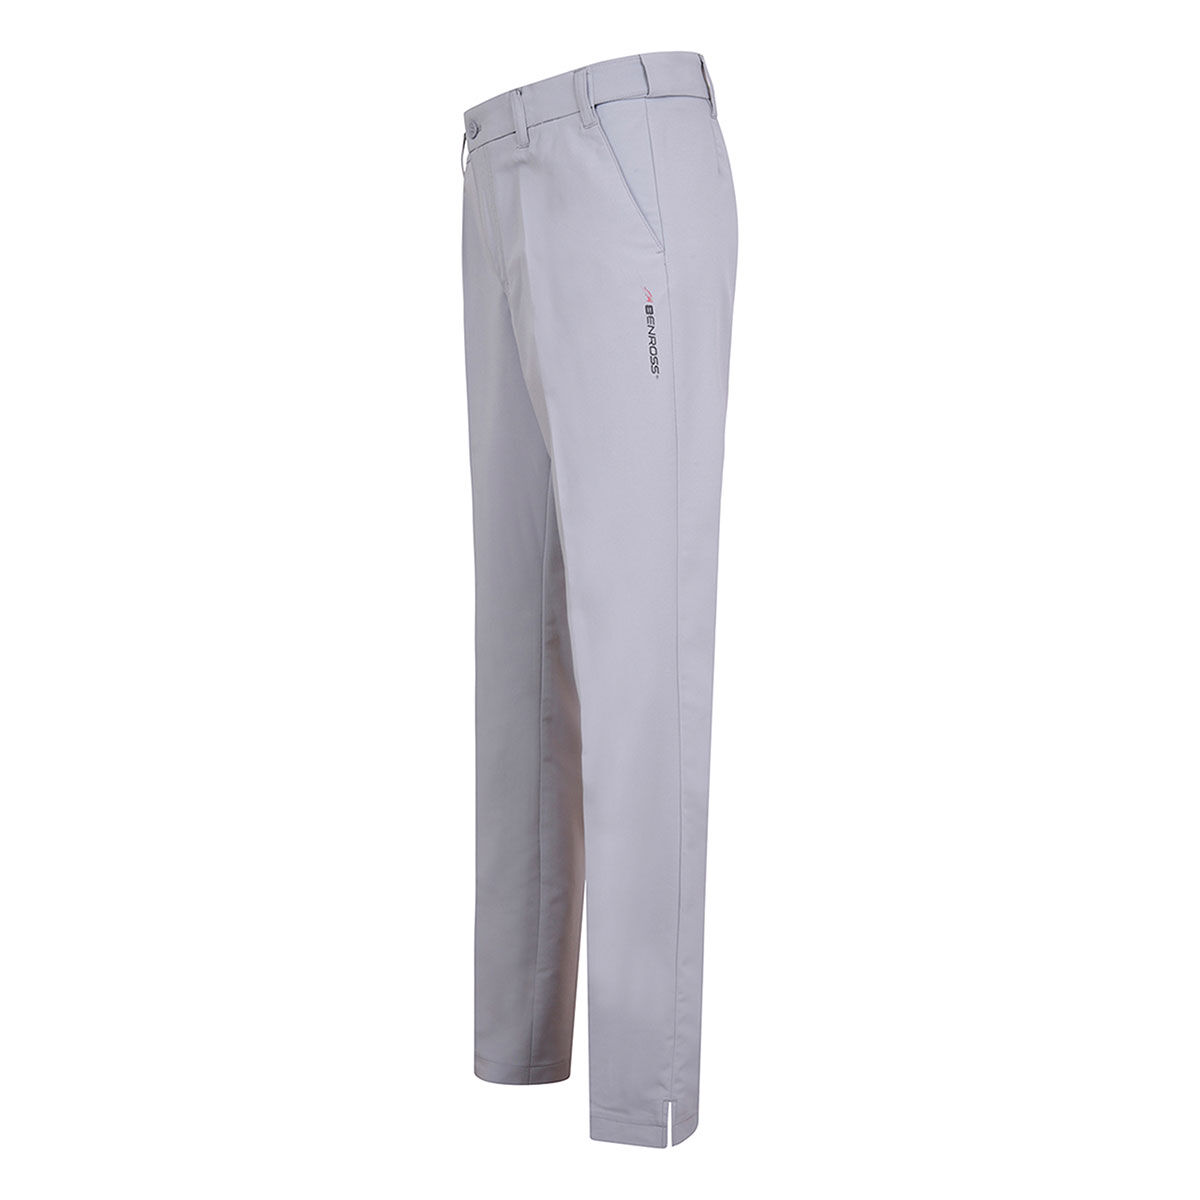 Pantalon Benross Tech, homme, Normal, Light grey, 30 | Online Golf